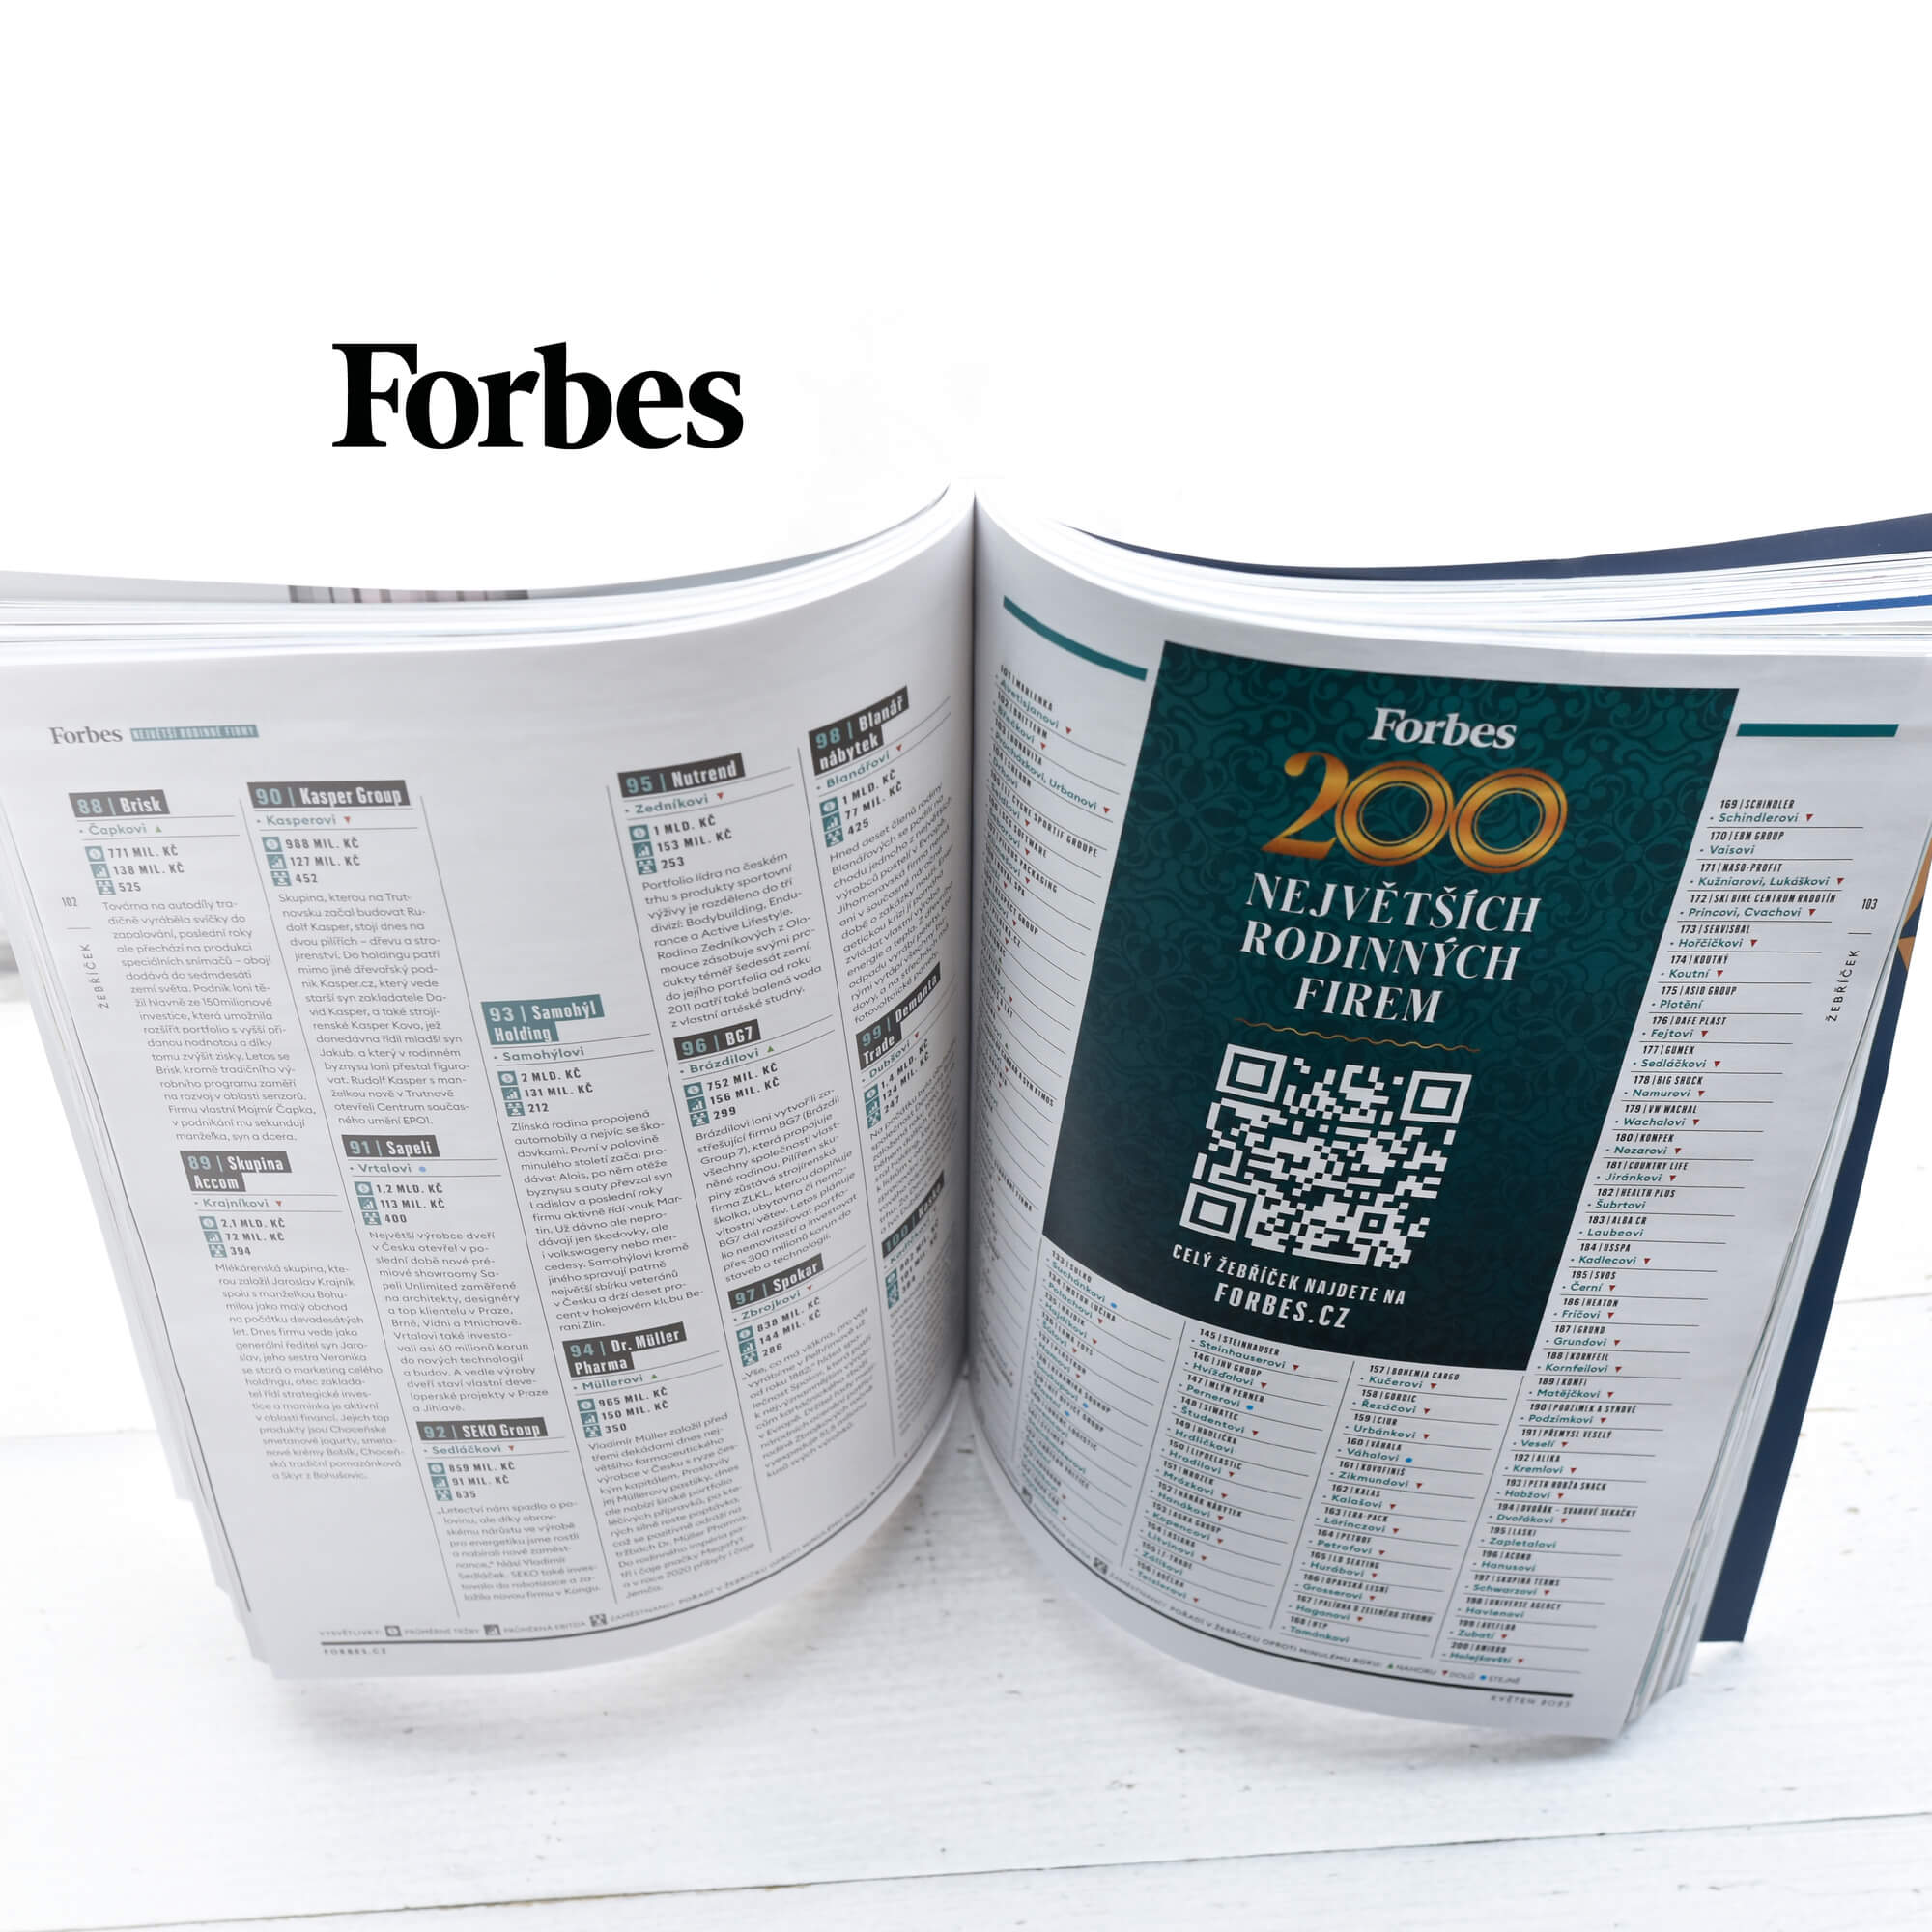 LIKO-S v rebríčku Forbes 200 najväčších rodinných firiem v Česku